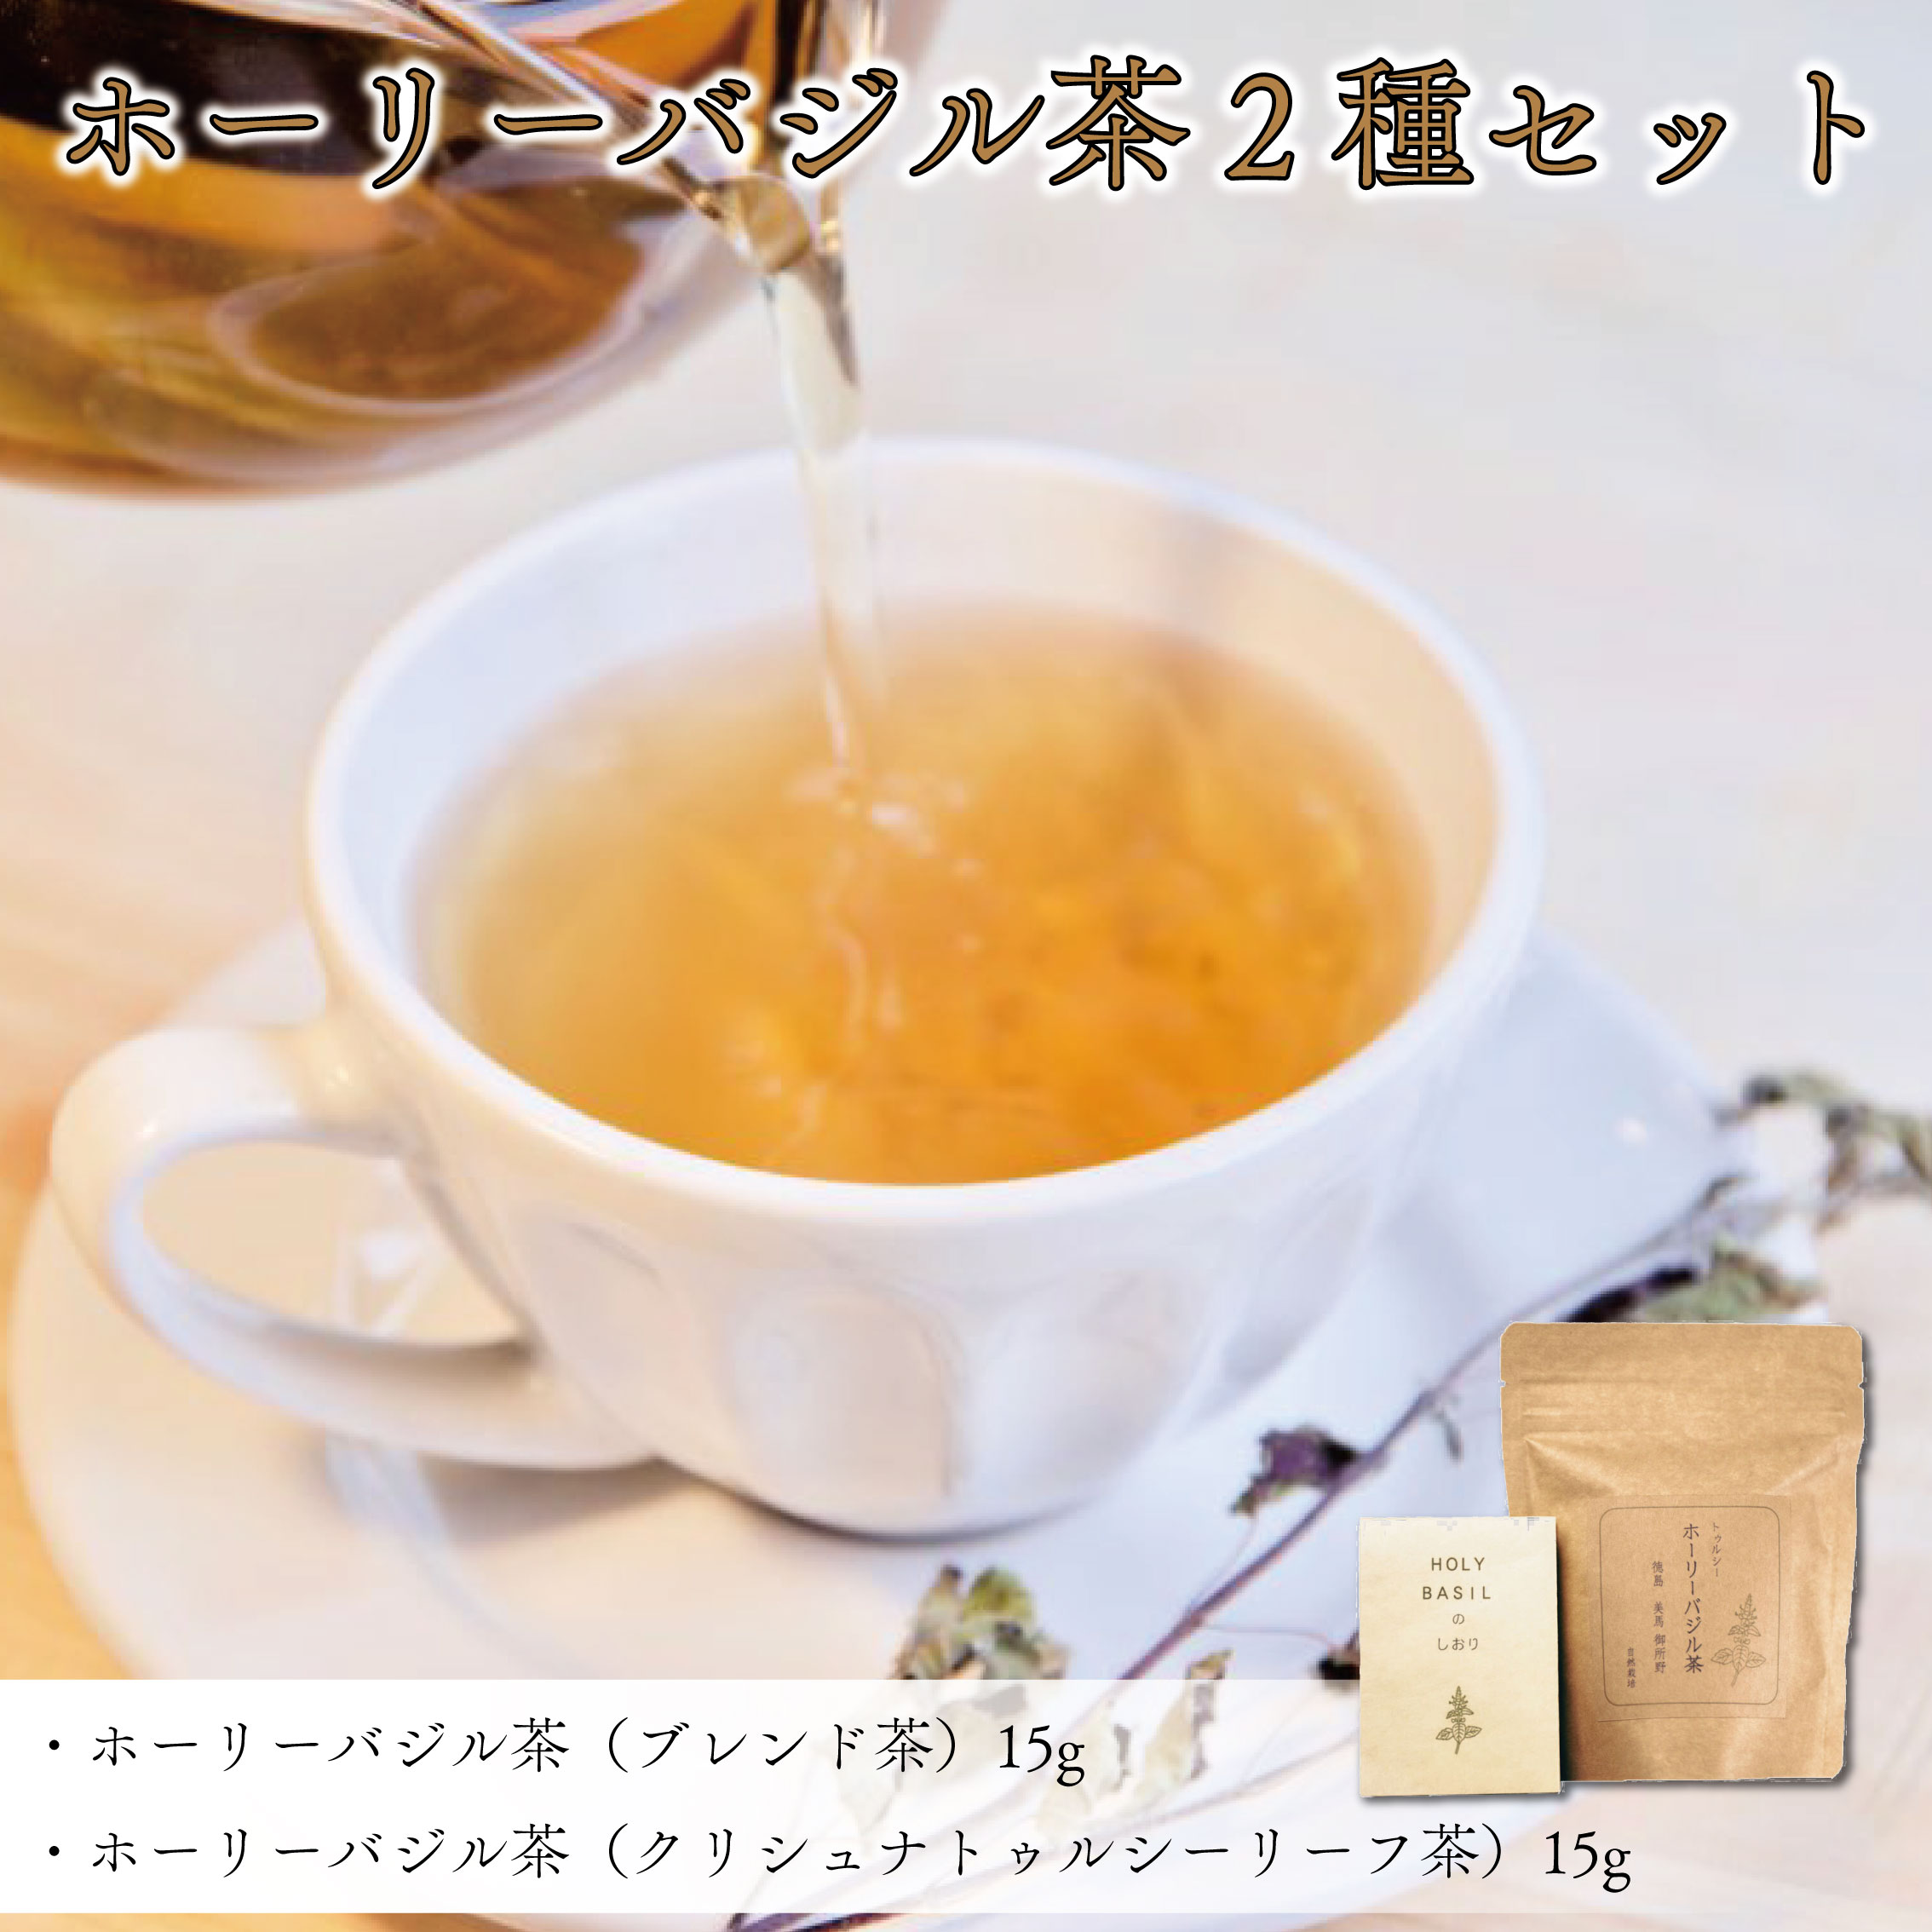 お茶 ブレンド茶 バジル茶 2種 セット ホーリーバジル茶 ハーブティ 徳島県 阿波市 ハナサカーラ